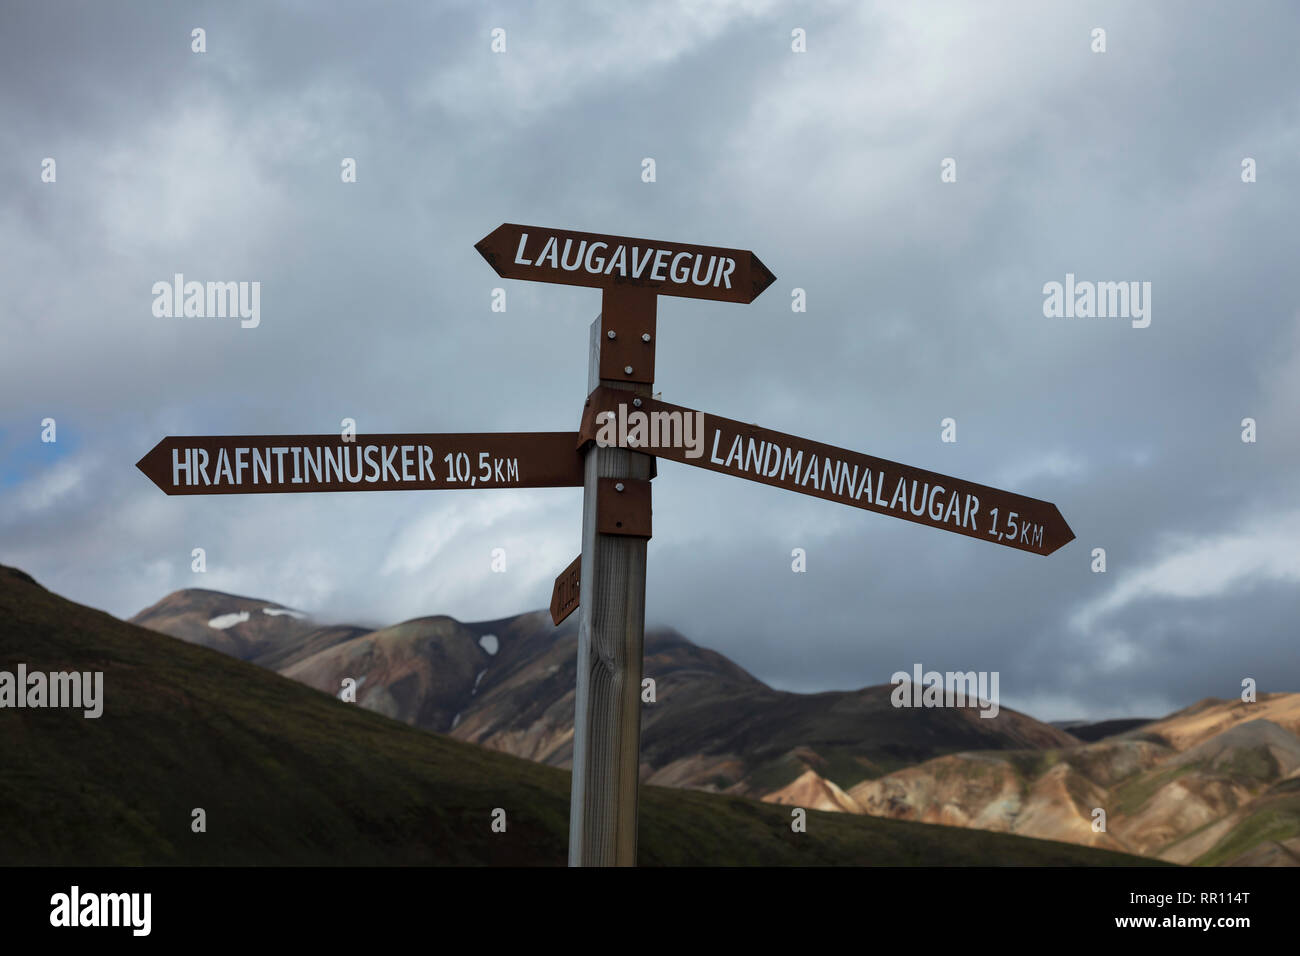 Escursionismo signpost segnando il Laugavegur sentiero vicino a Landmannalaugar. Highlands Centrali, Sudhurland, Islanda. Foto Stock